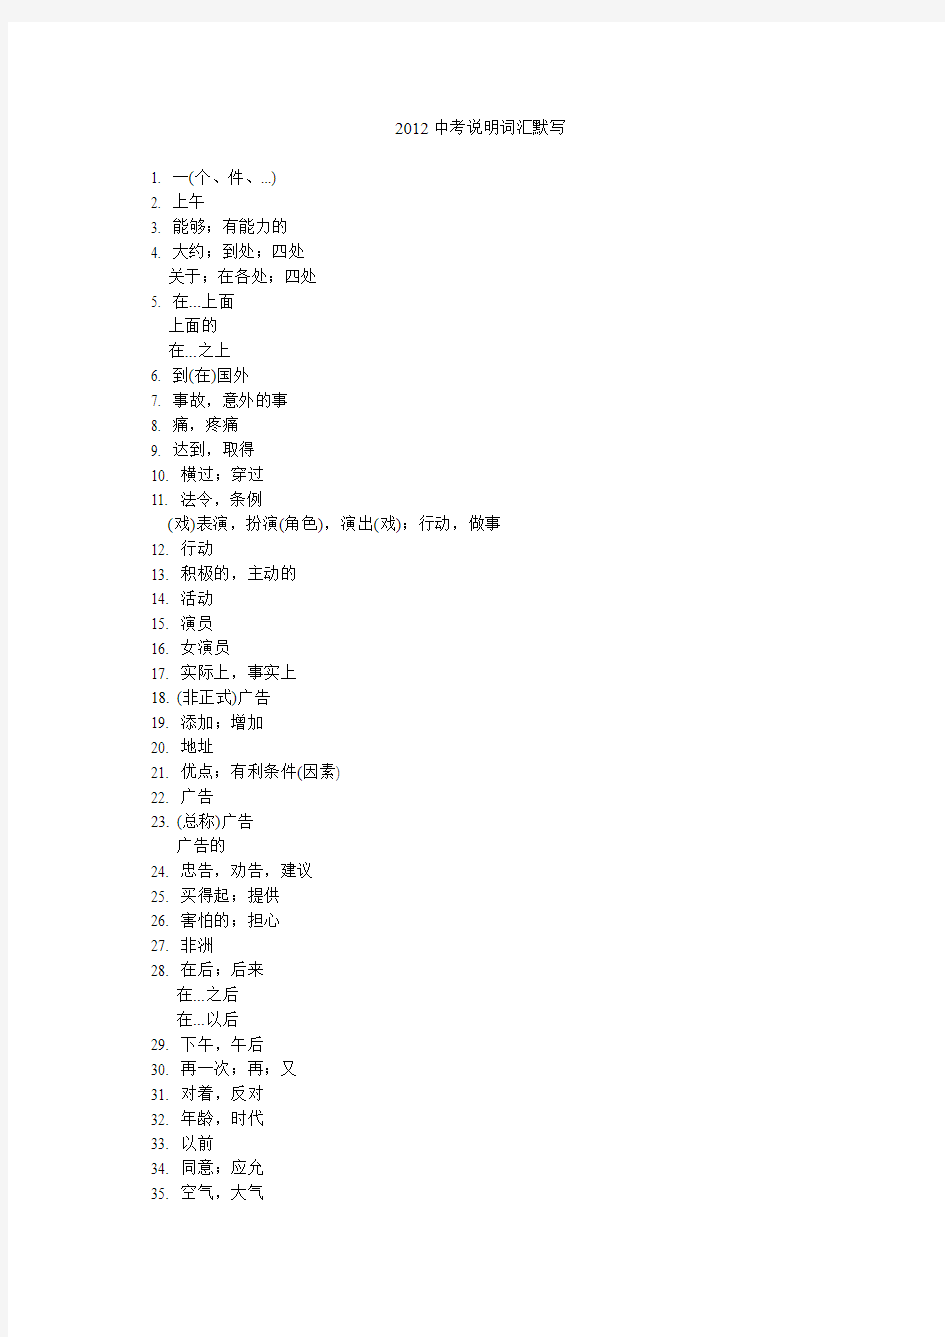 2012年浙江省初中毕业生学业考试说明英语词汇表汉语部分(用于默写)